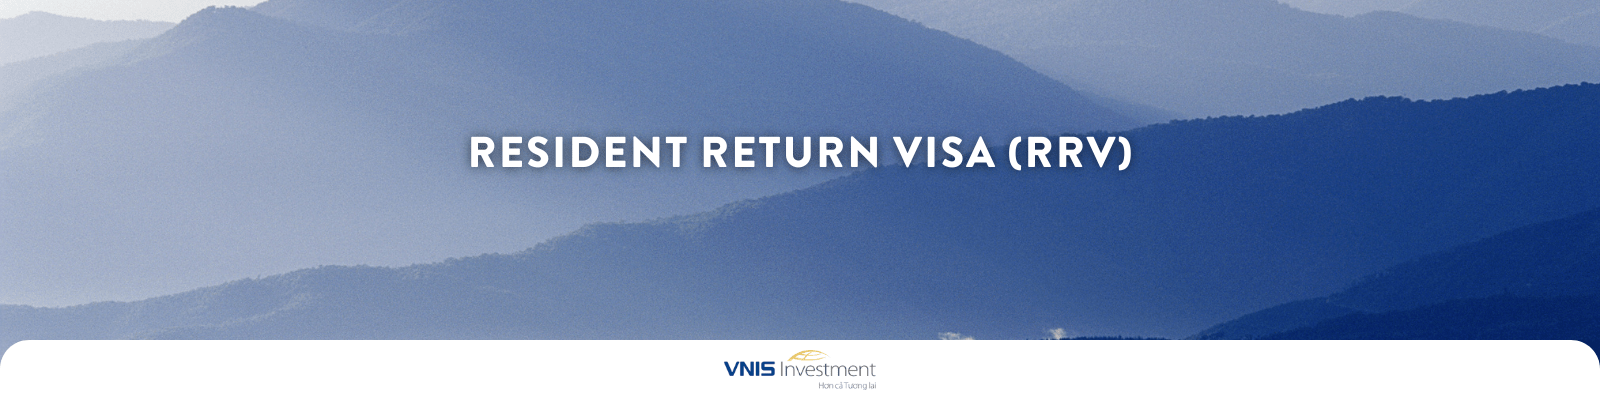 Resident Return Visa (RRV)